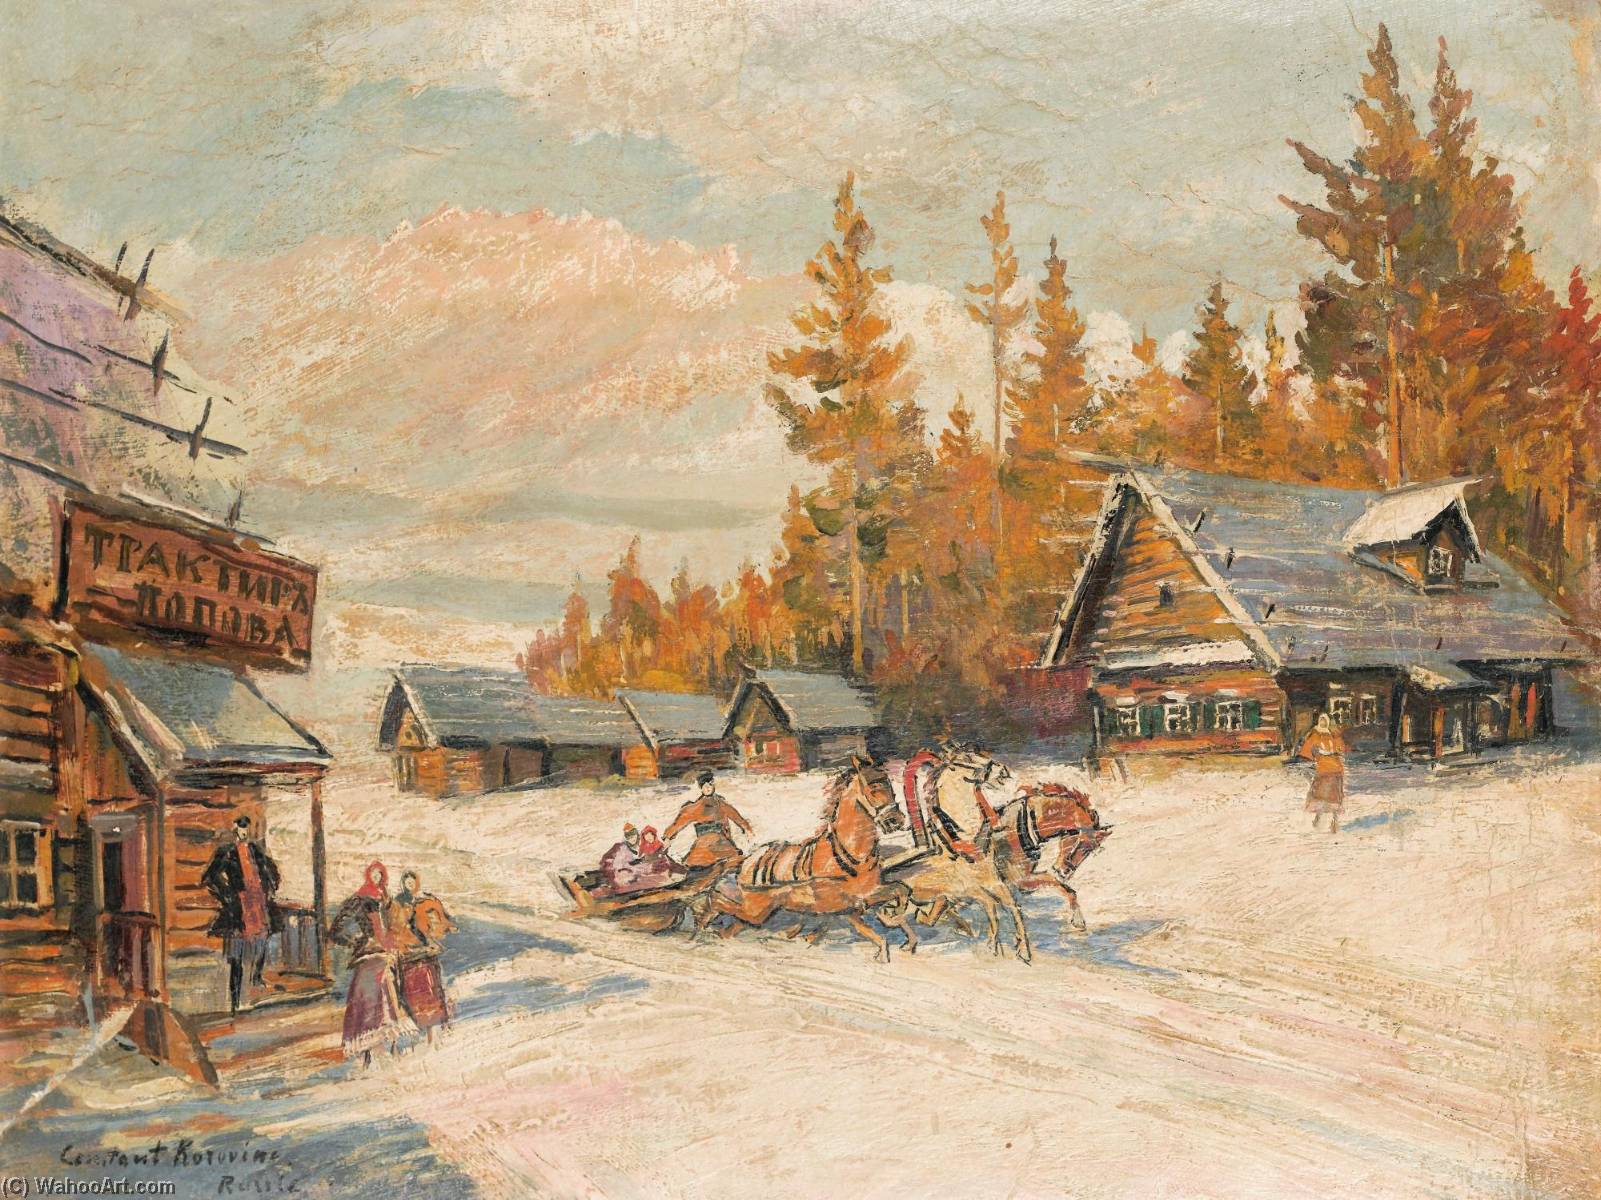 WikiOO.org - Encyclopedia of Fine Arts - Lukisan, Artwork Konstantin Alekseyevich Korovin - Winter scene with Troika Winter Sleigh Ride